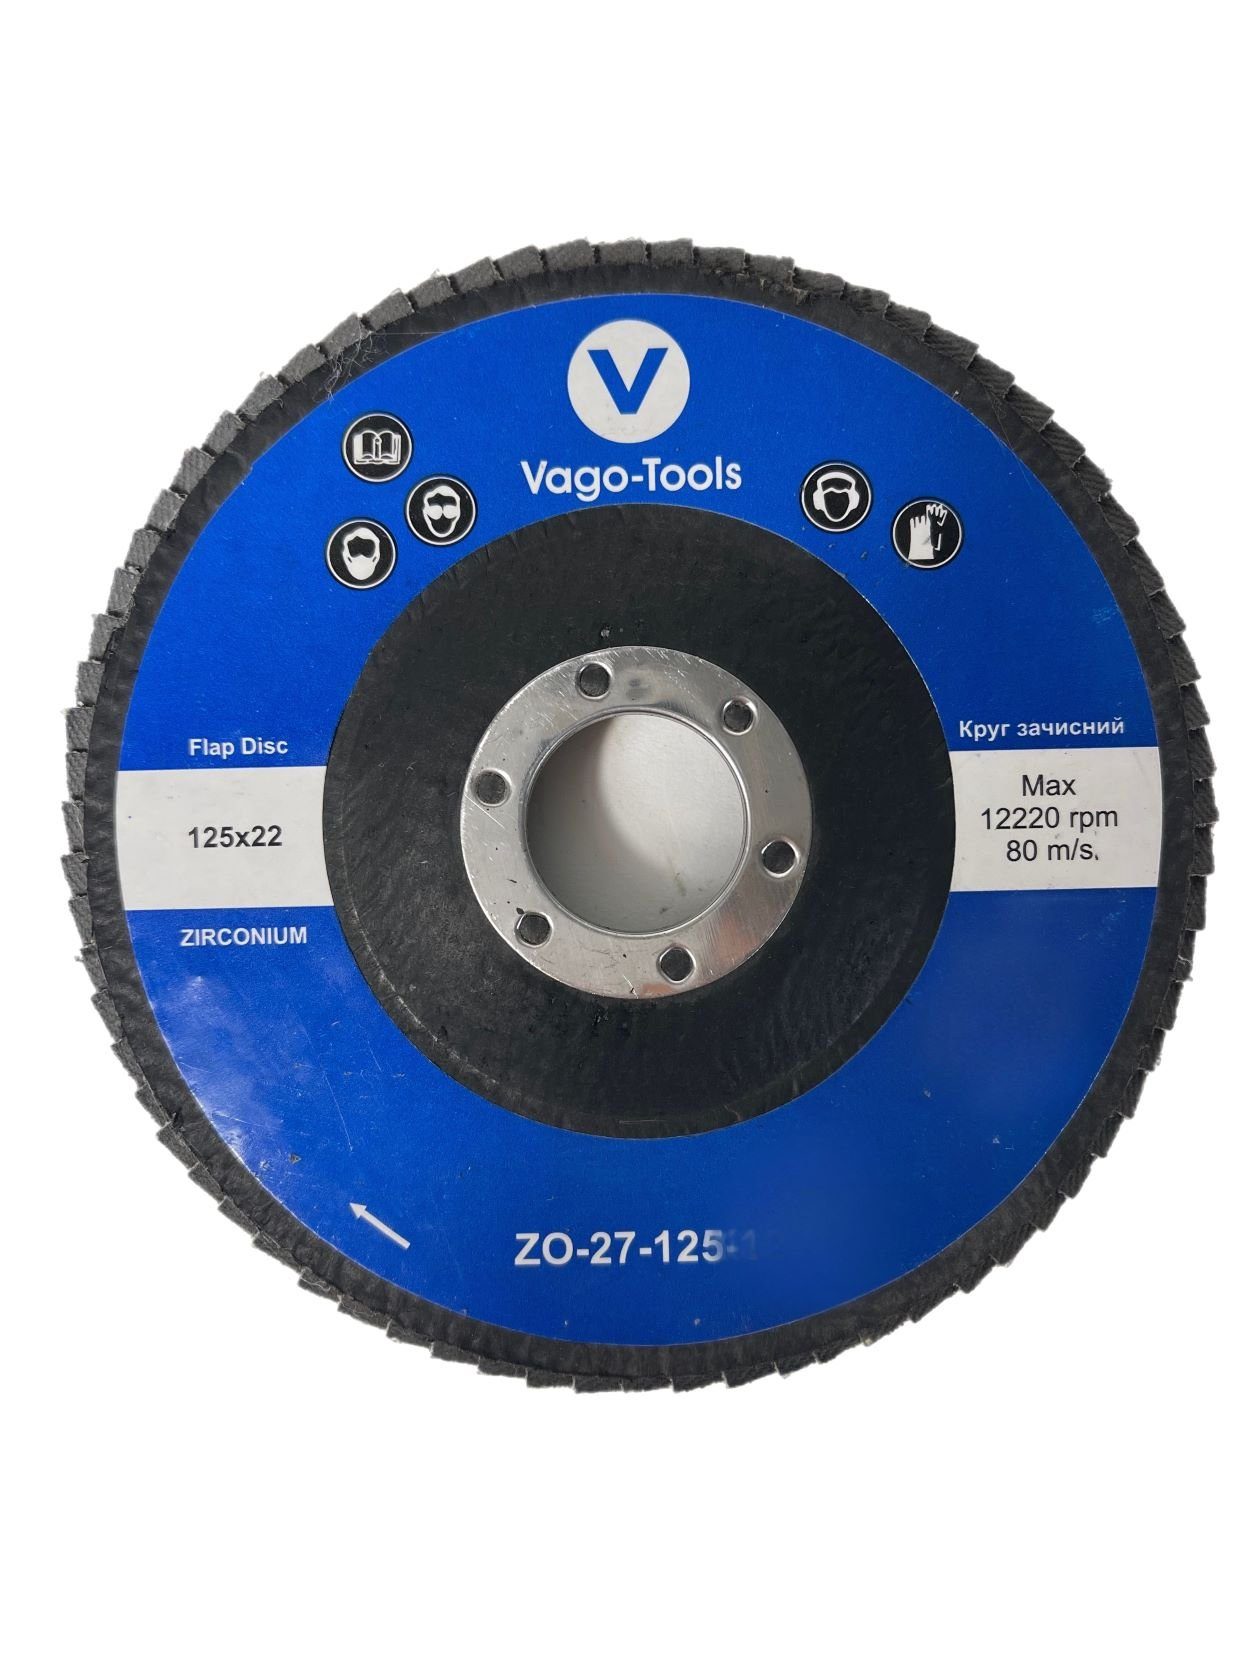 VaGo-Tools Schleifscheibe Fächerschleifscheiben 125mm P36 flach Blau 50x, (Packung)